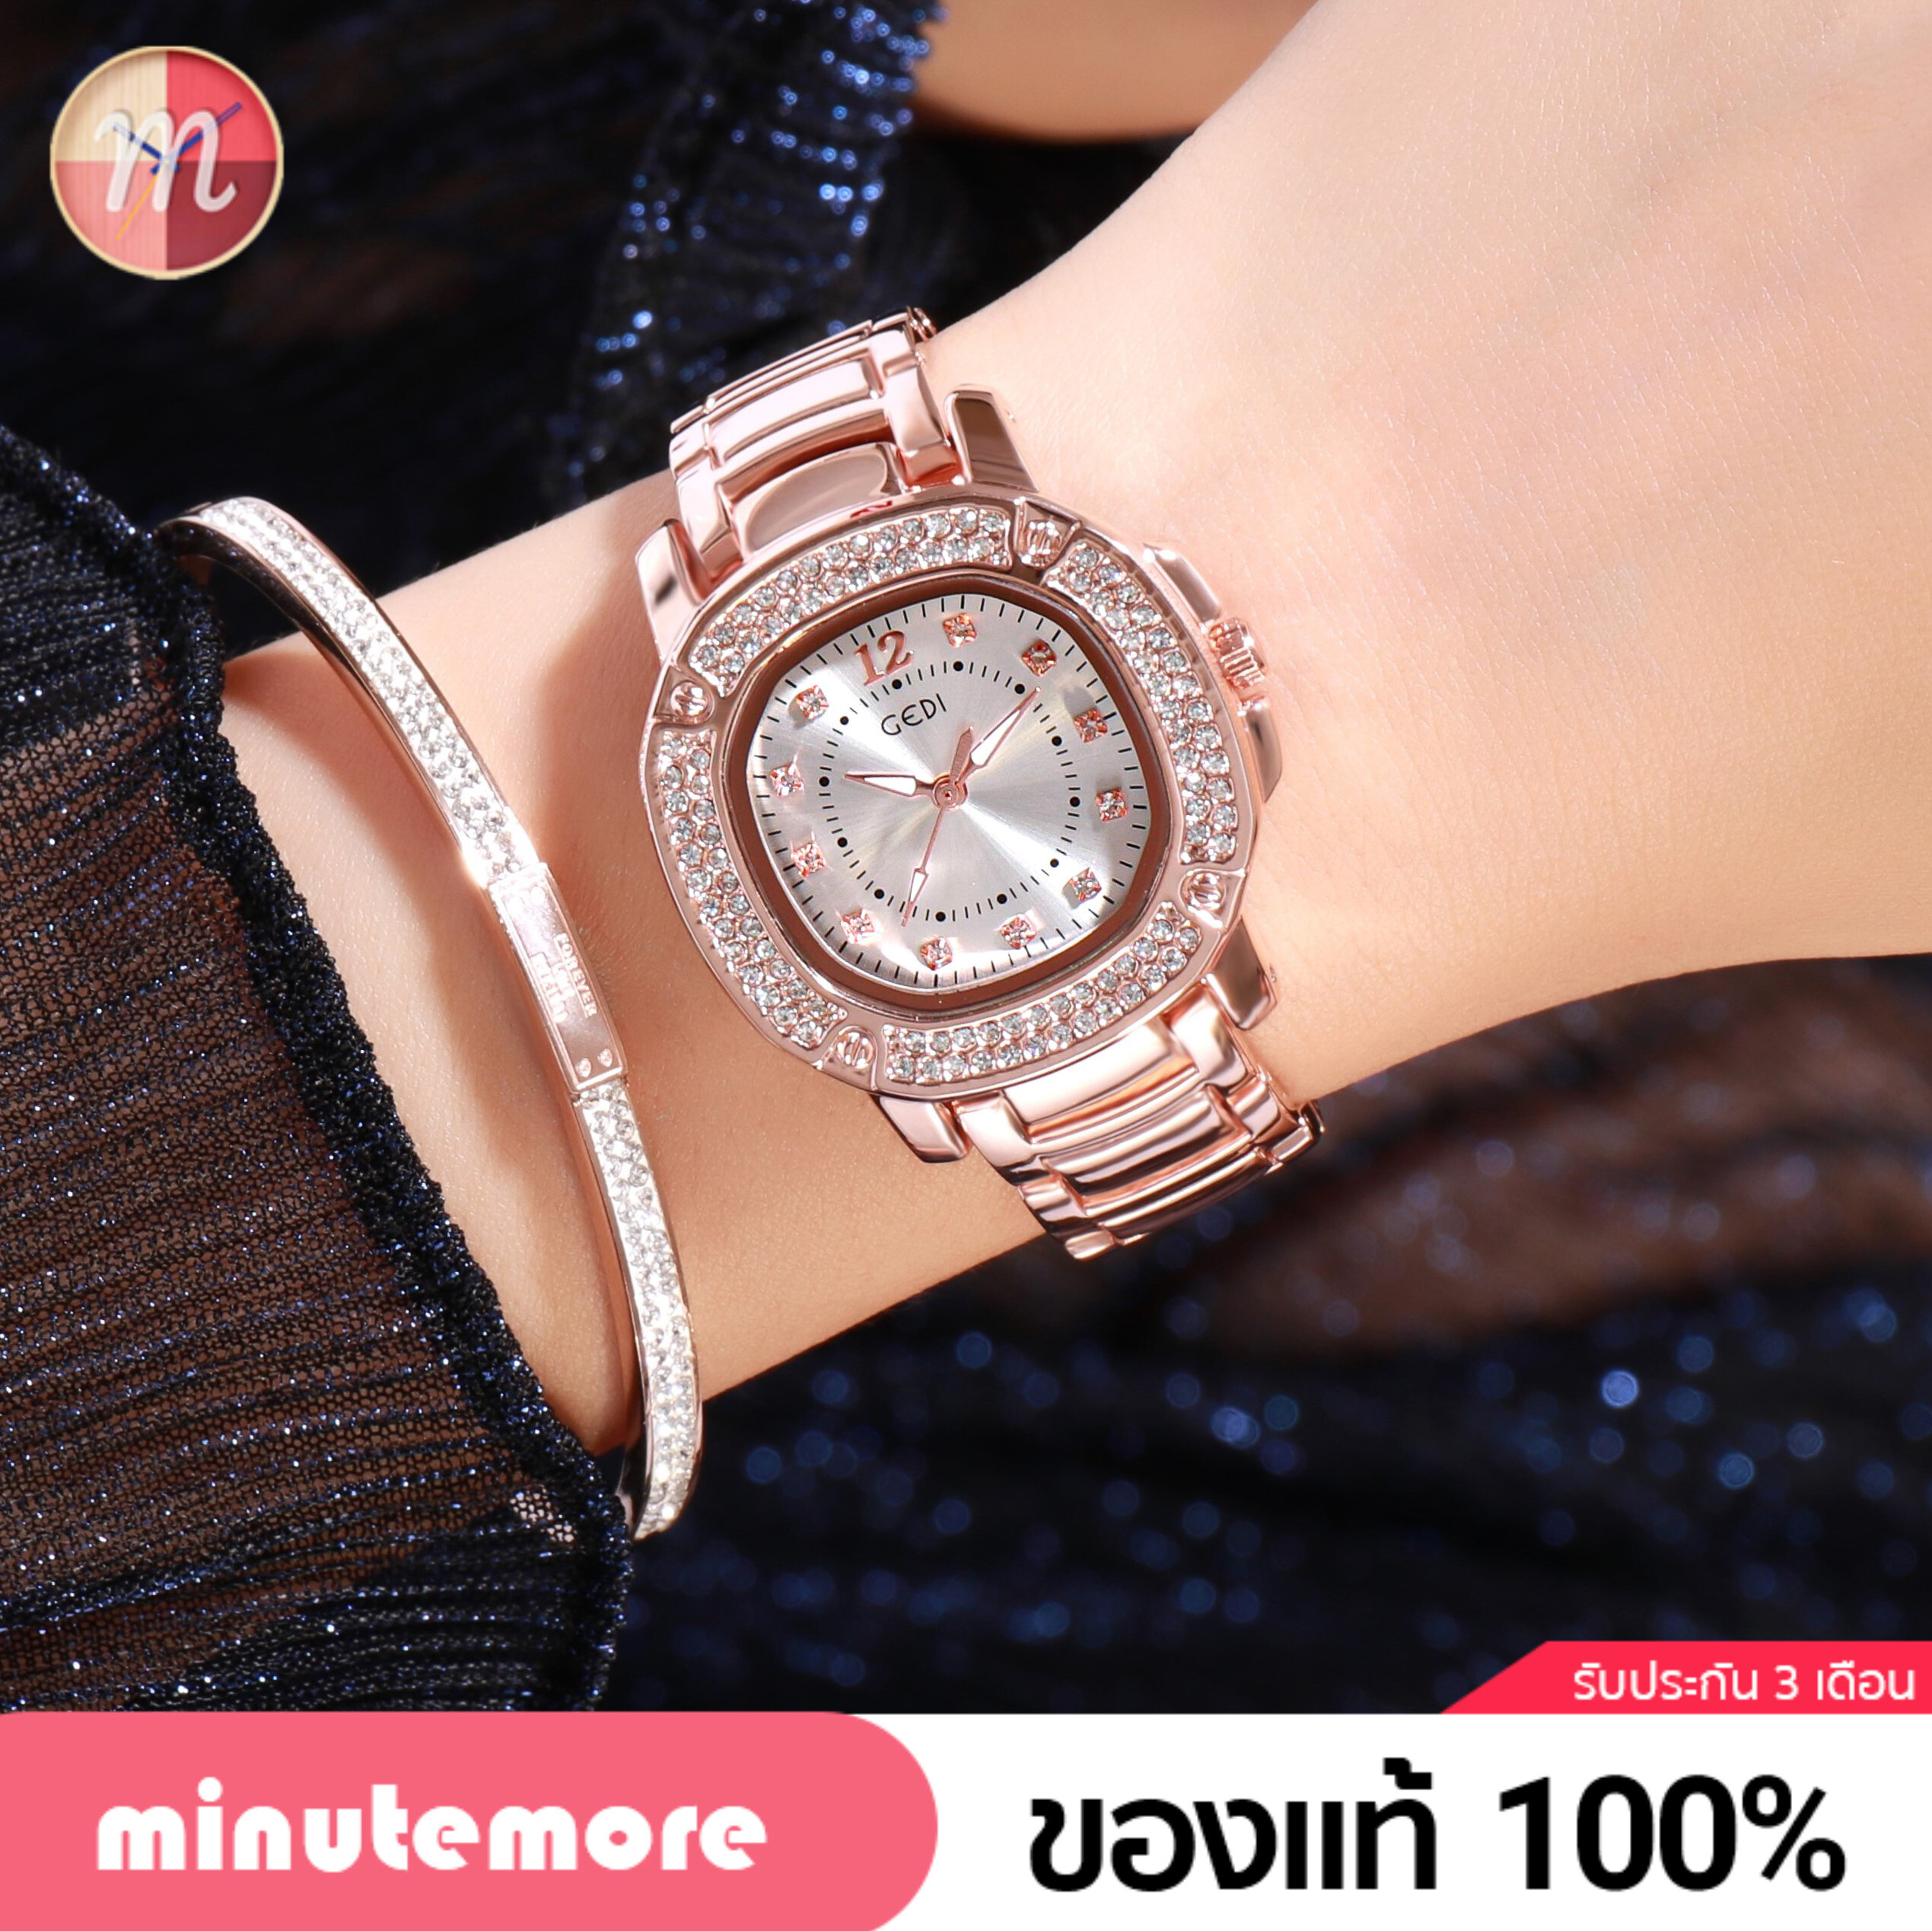 GD-3200 นาฬิกา ก้านแก้ว Gedi นาฬิกาข้อมือผู้หญิง จีดี้ ล้อมเพชร ถูกที่สุด! ของแท้ 100% พร้อมส่ง